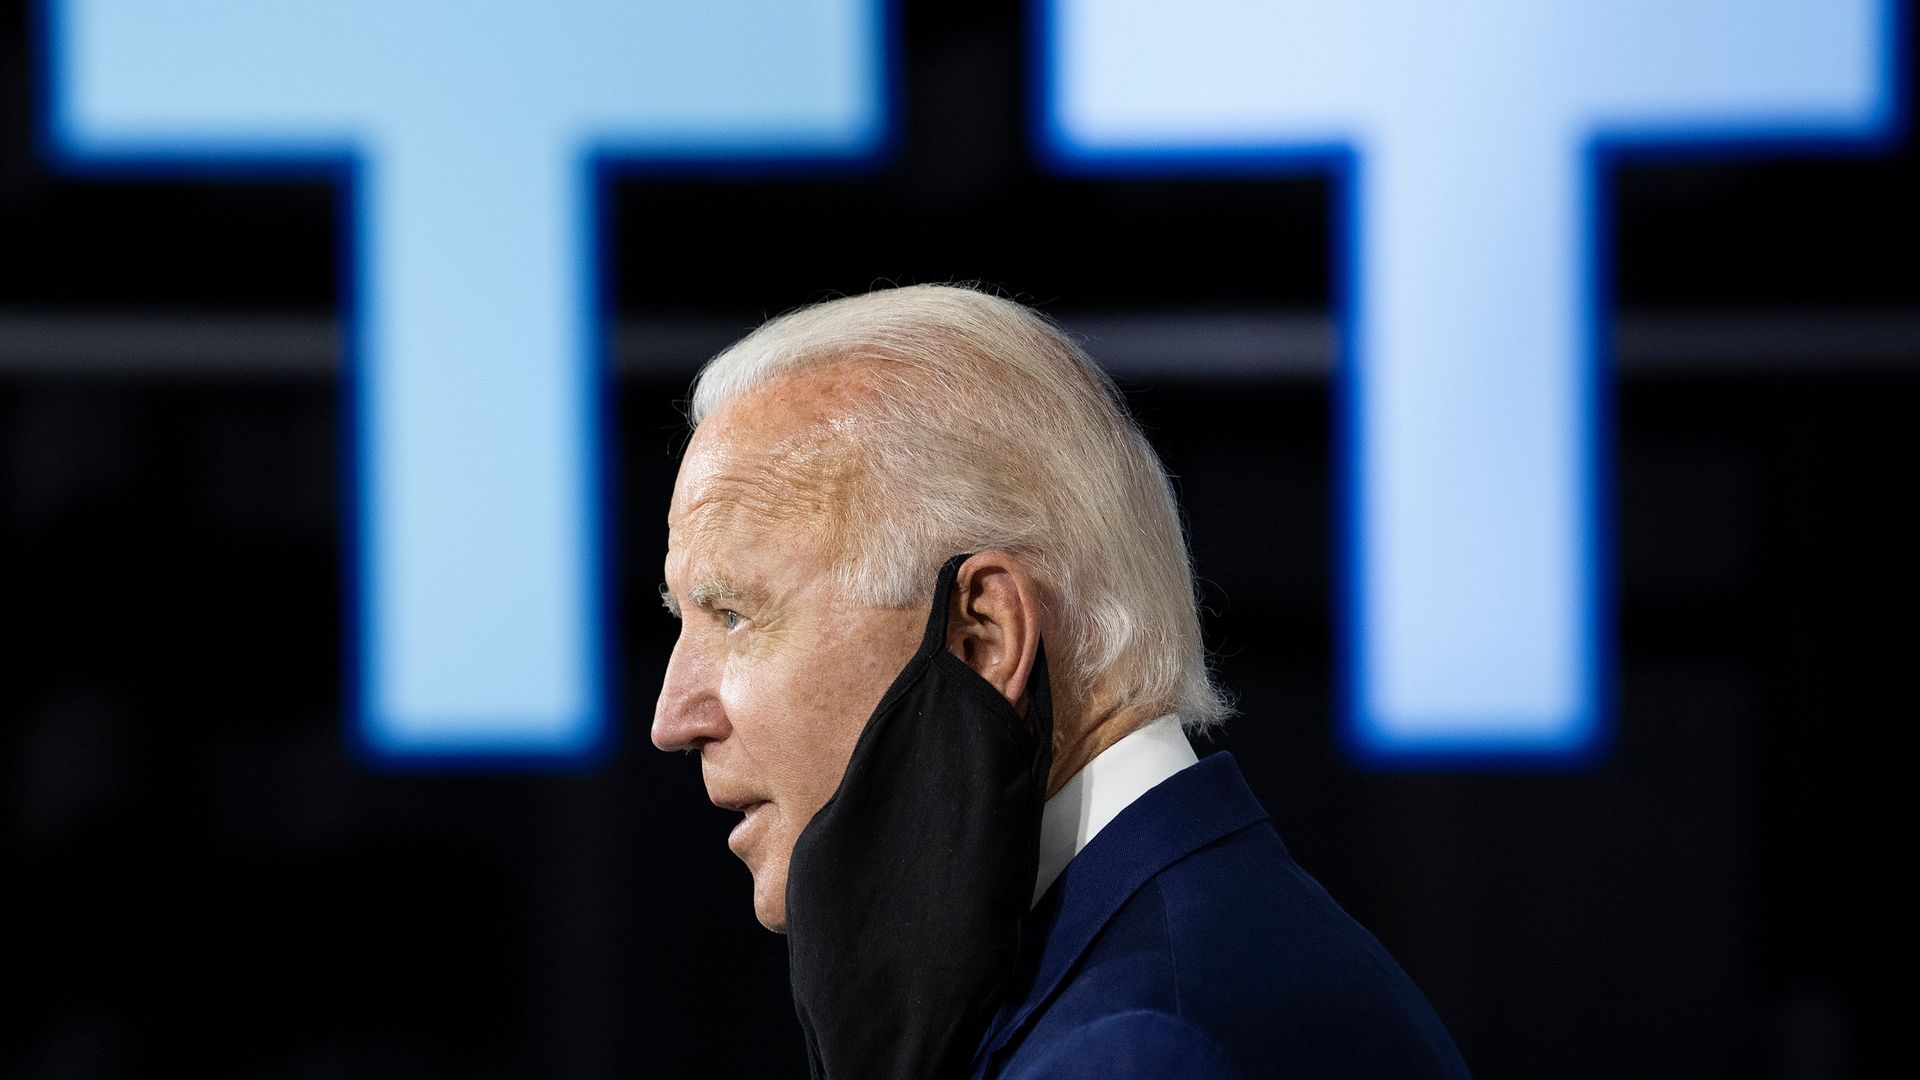 Joe Biden wears a mask hanging from one ear 